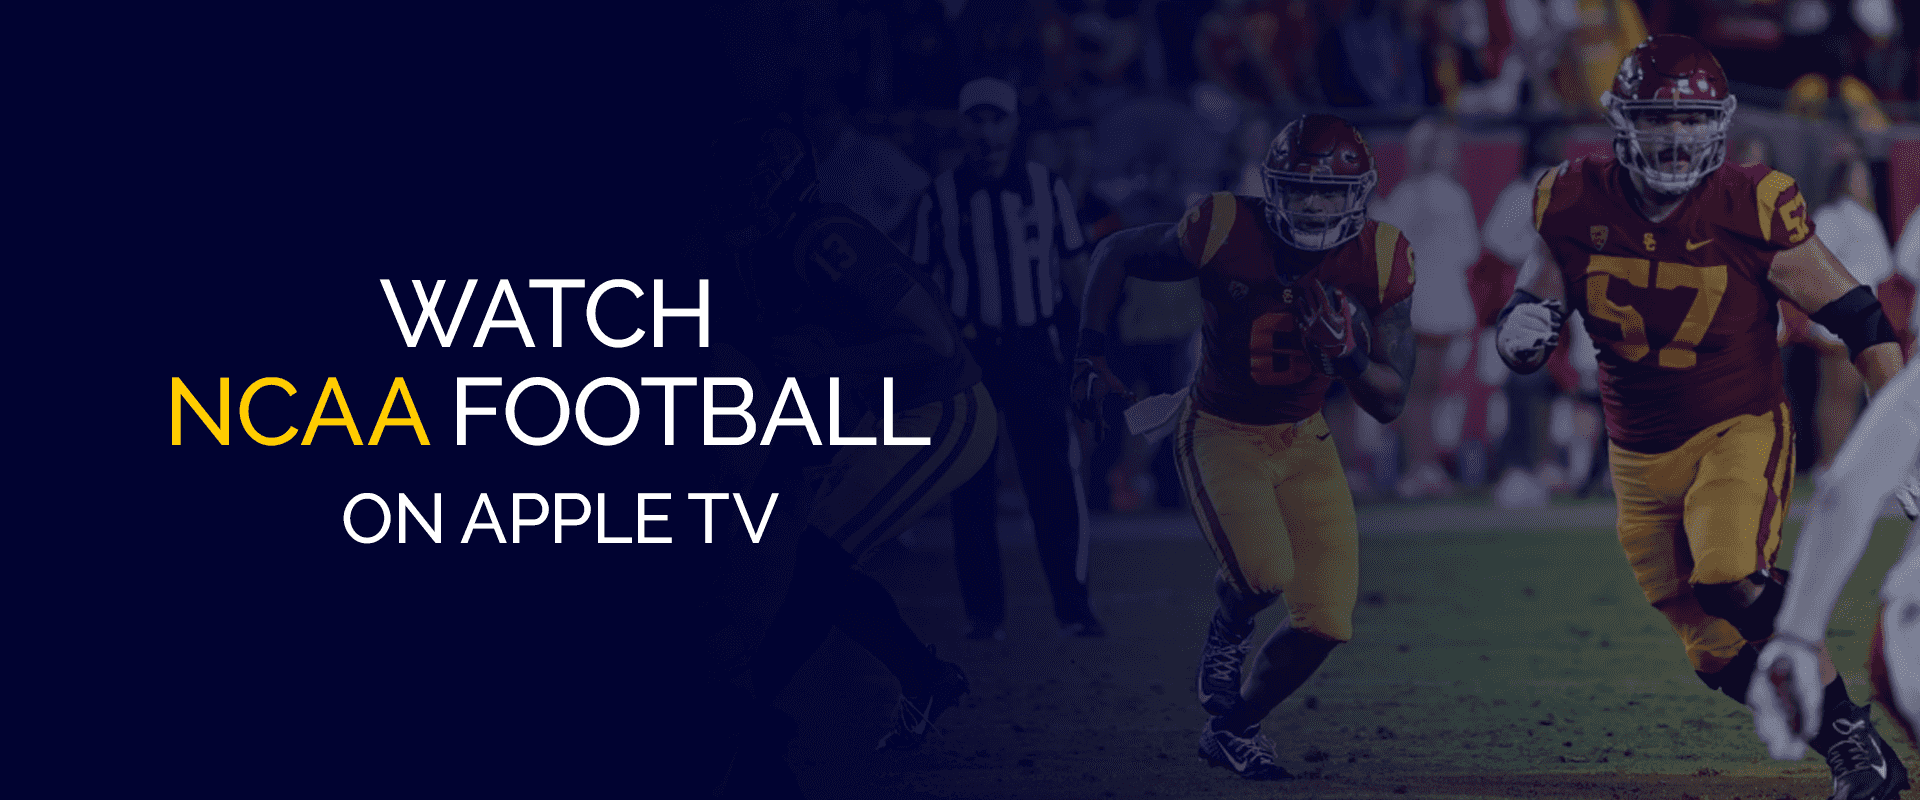 Watch NCAA Football on Apple TV